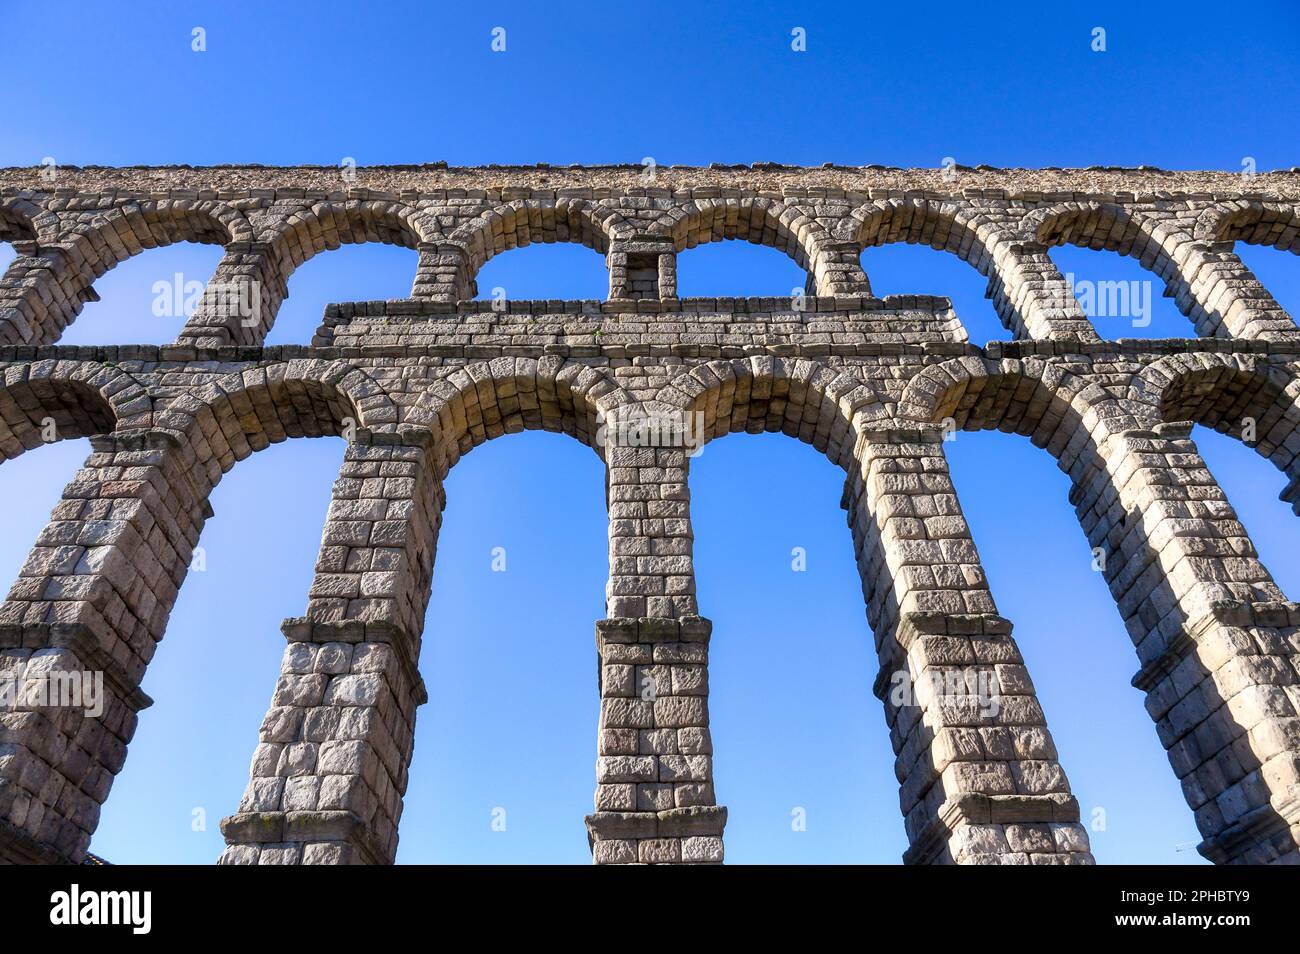 Aqueduc romain de Segovia, Espagne Banque D'Images